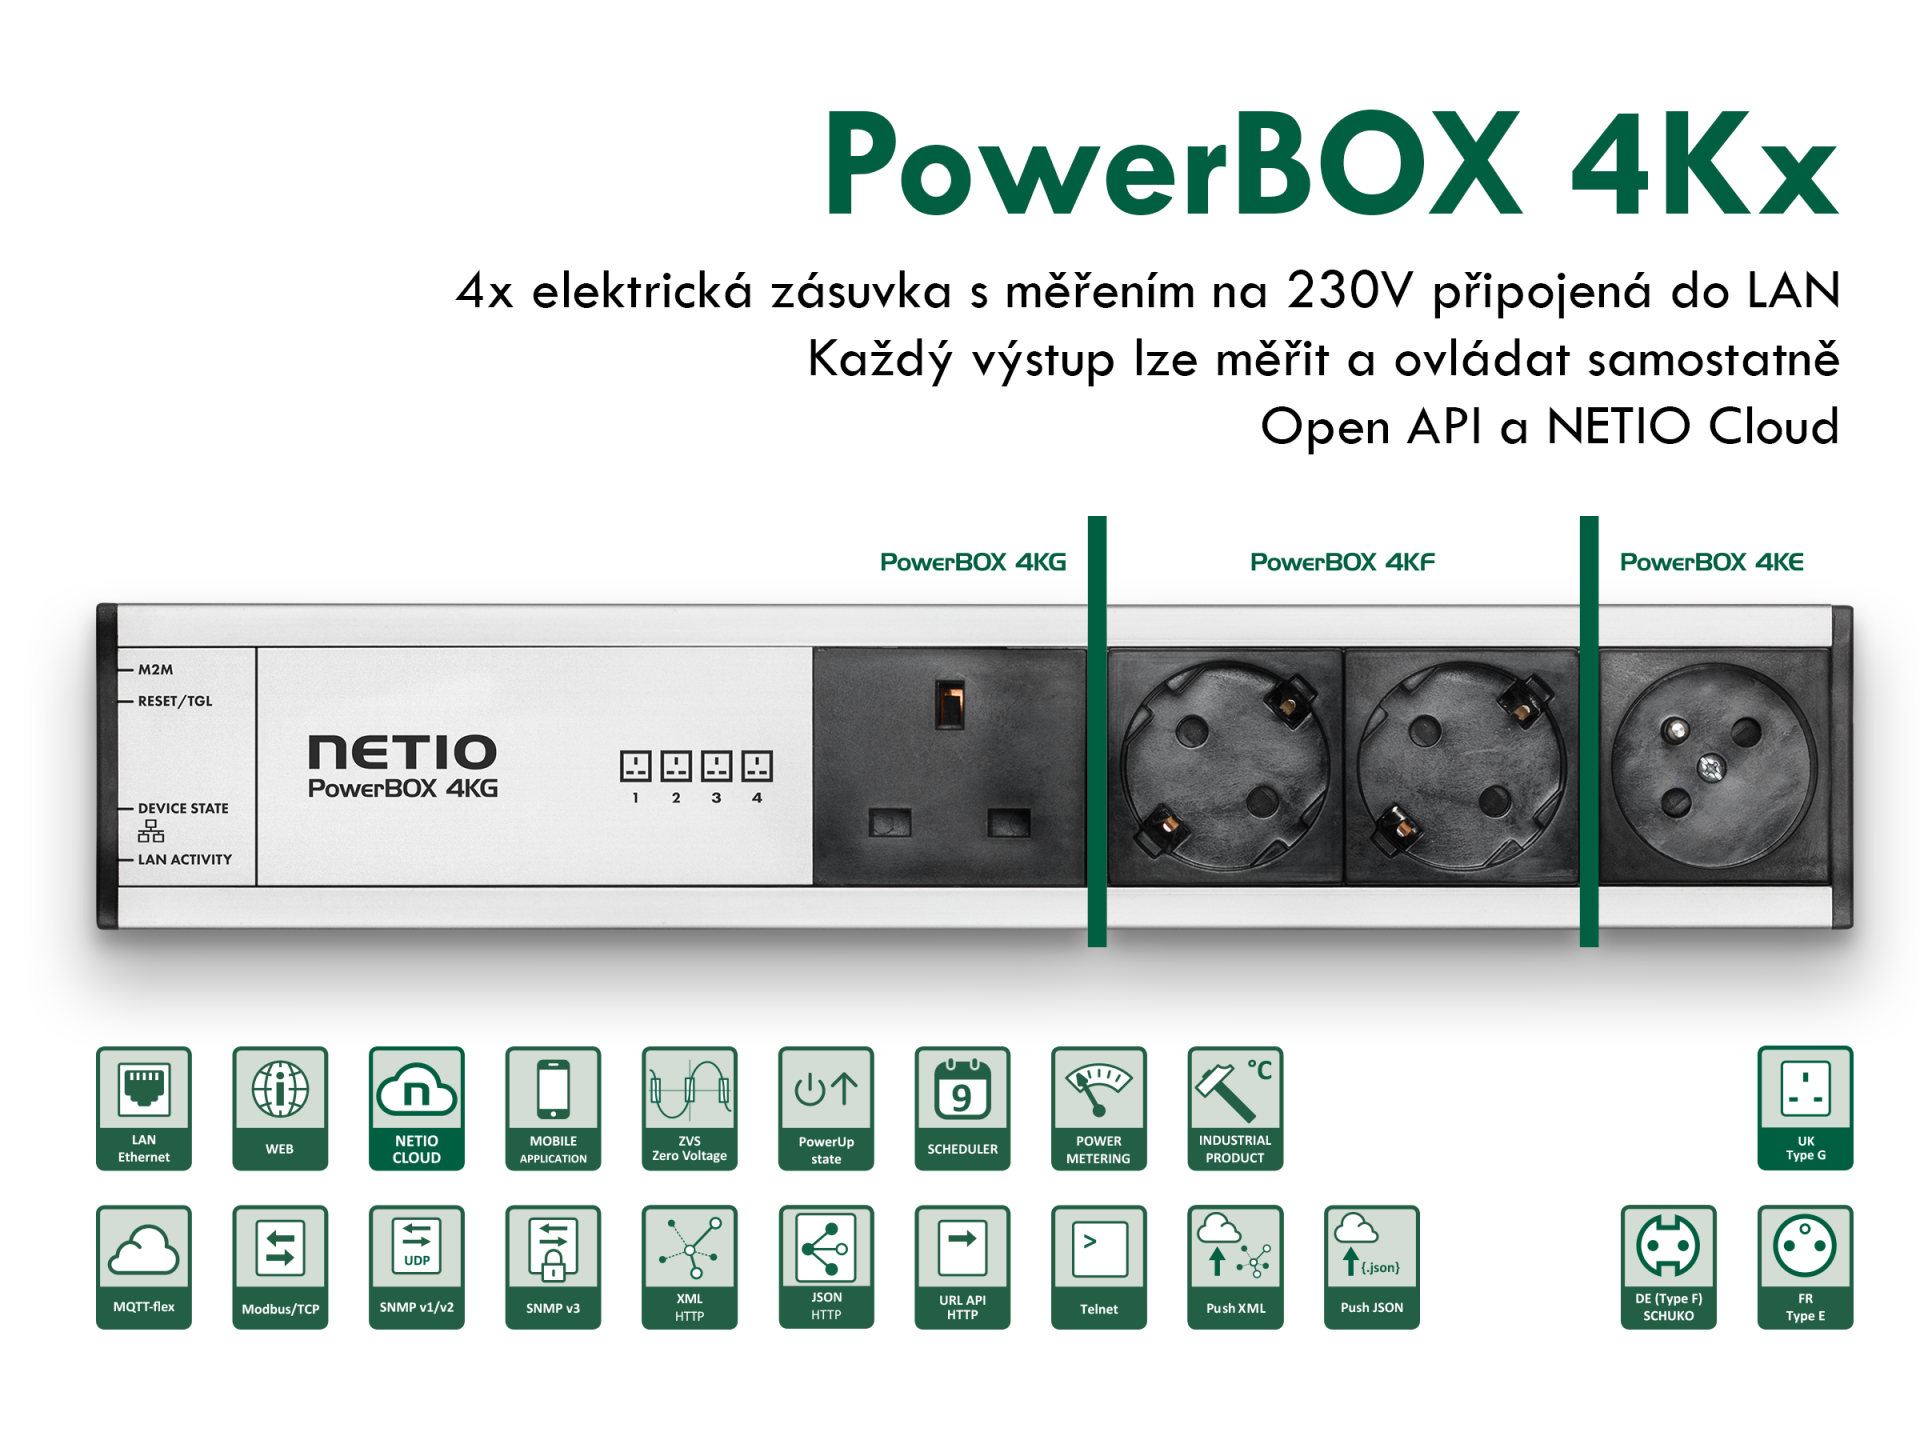 Chytrá zásuvka - NETIO PowerBOX 4KE